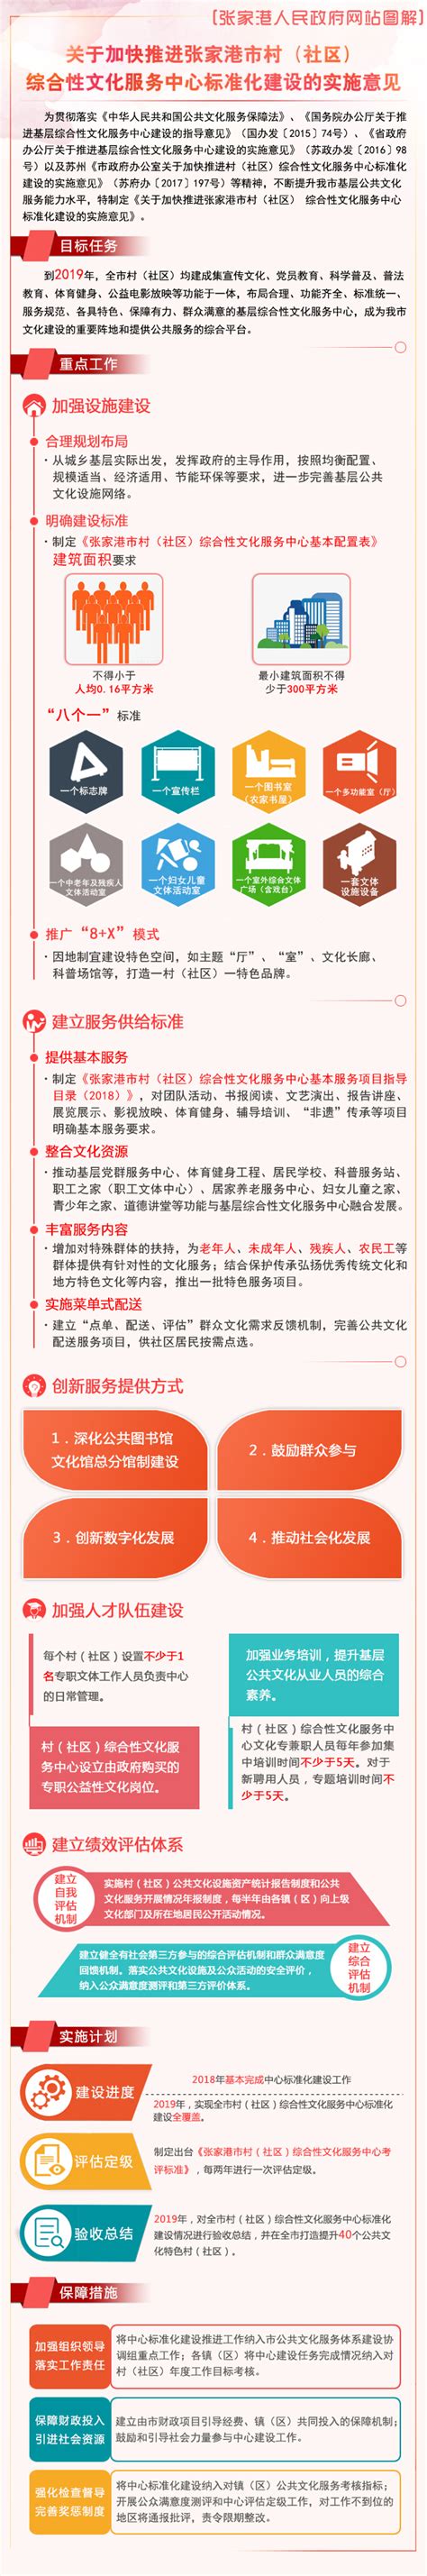 张家港市开展基层综合性文化服务中心标准化建设督查